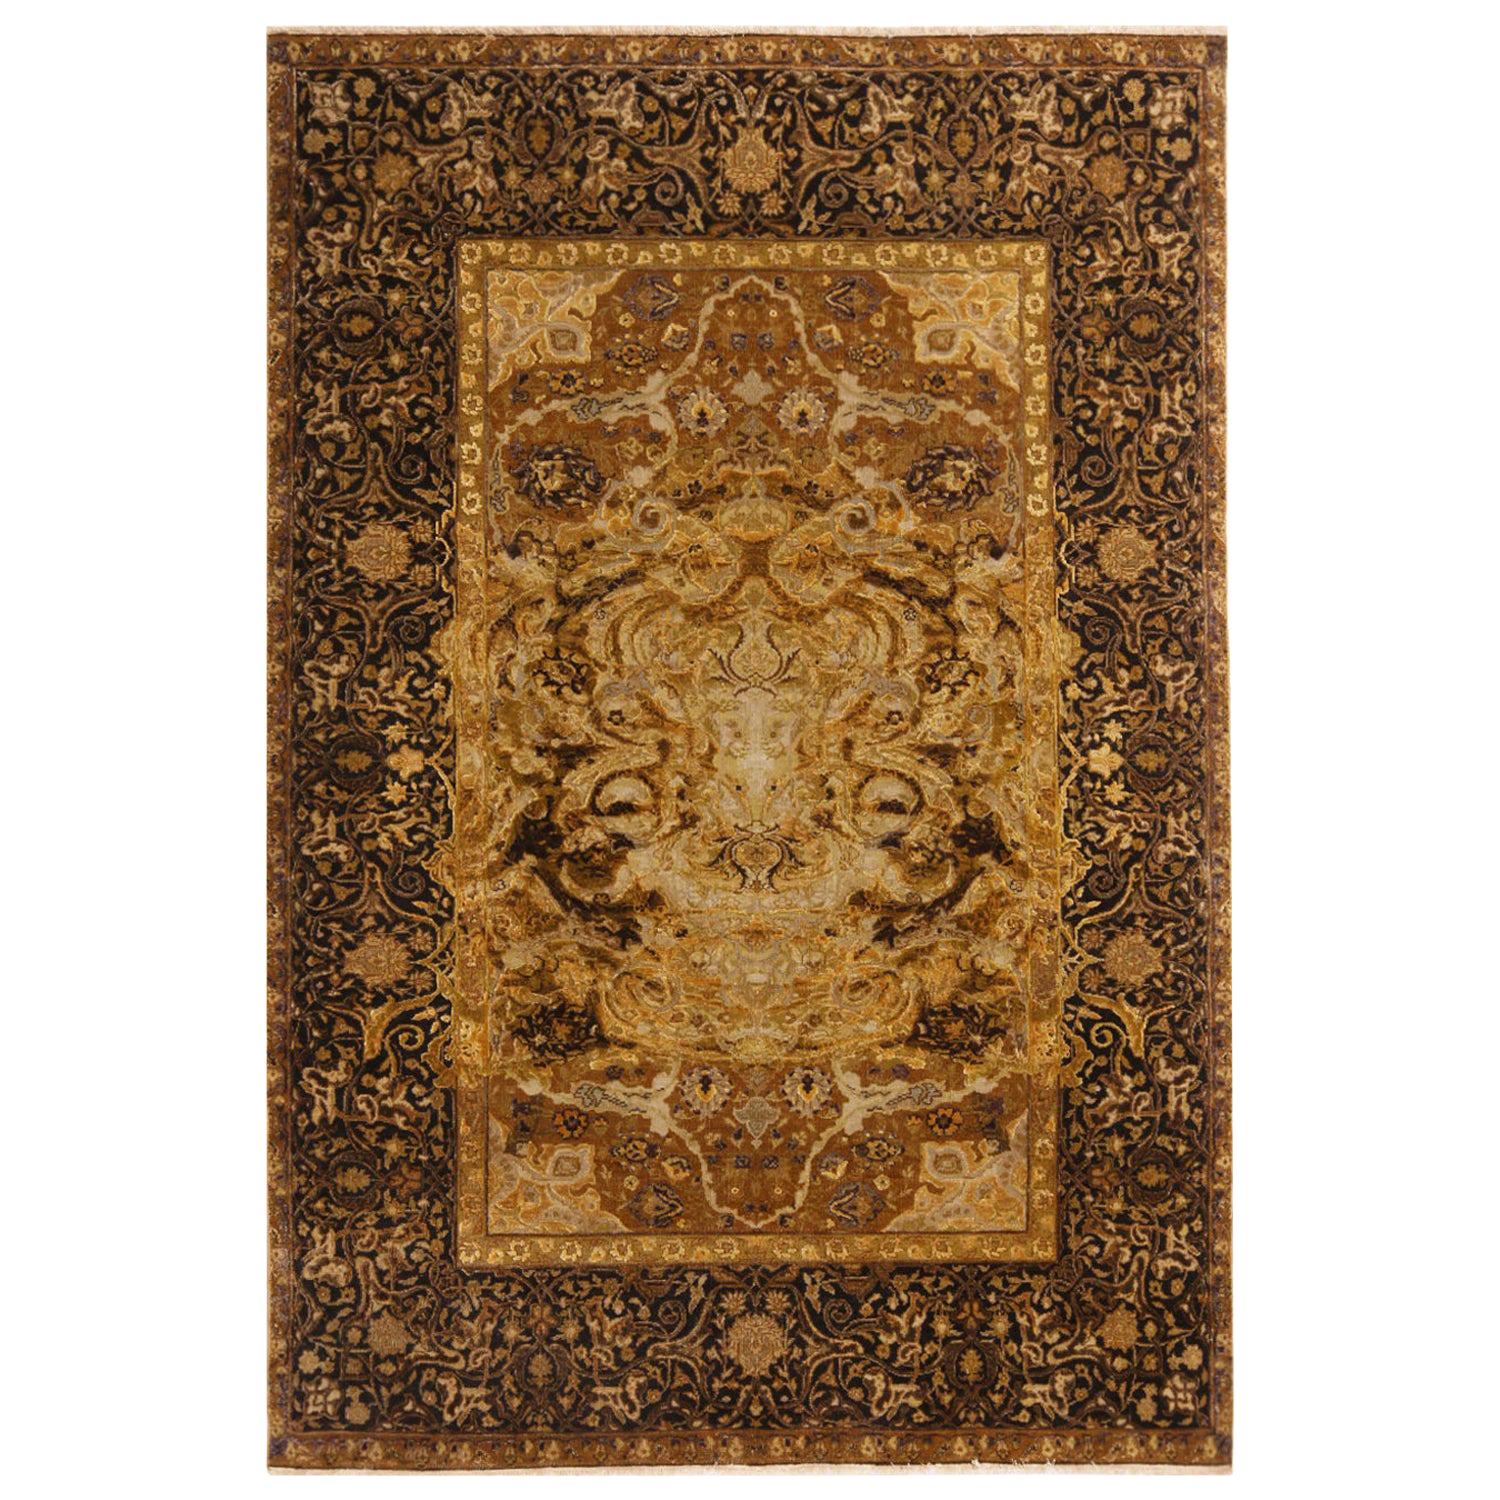 Teppich & Kelim aus dem 17. Jahrhundert, inspirierter schwarz-goldener Woll- und Seidenteppich